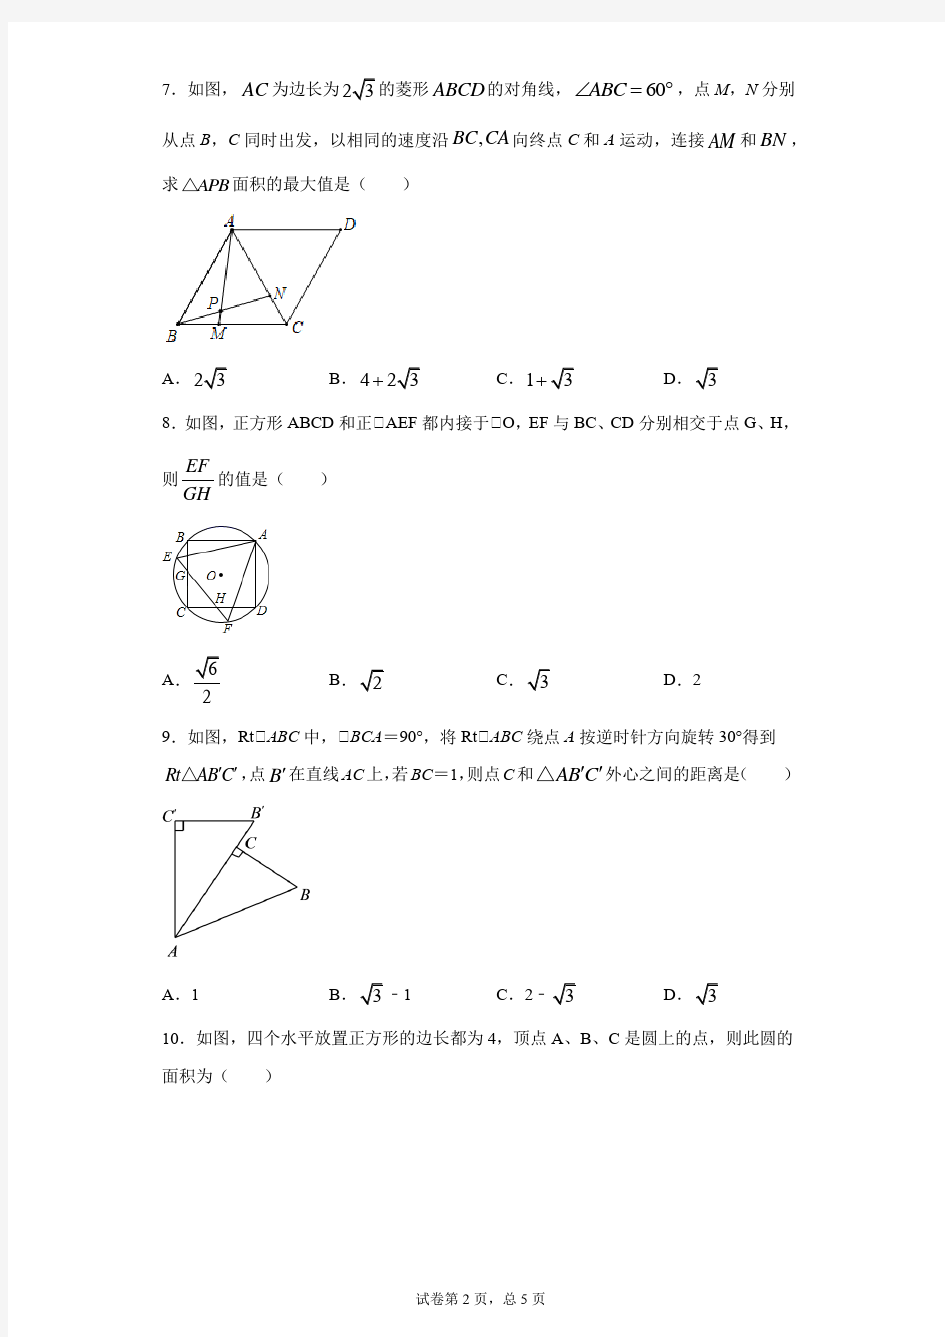 2021年华东师大版数学中考复习专题演练 — 确定圆的条件(含答案)